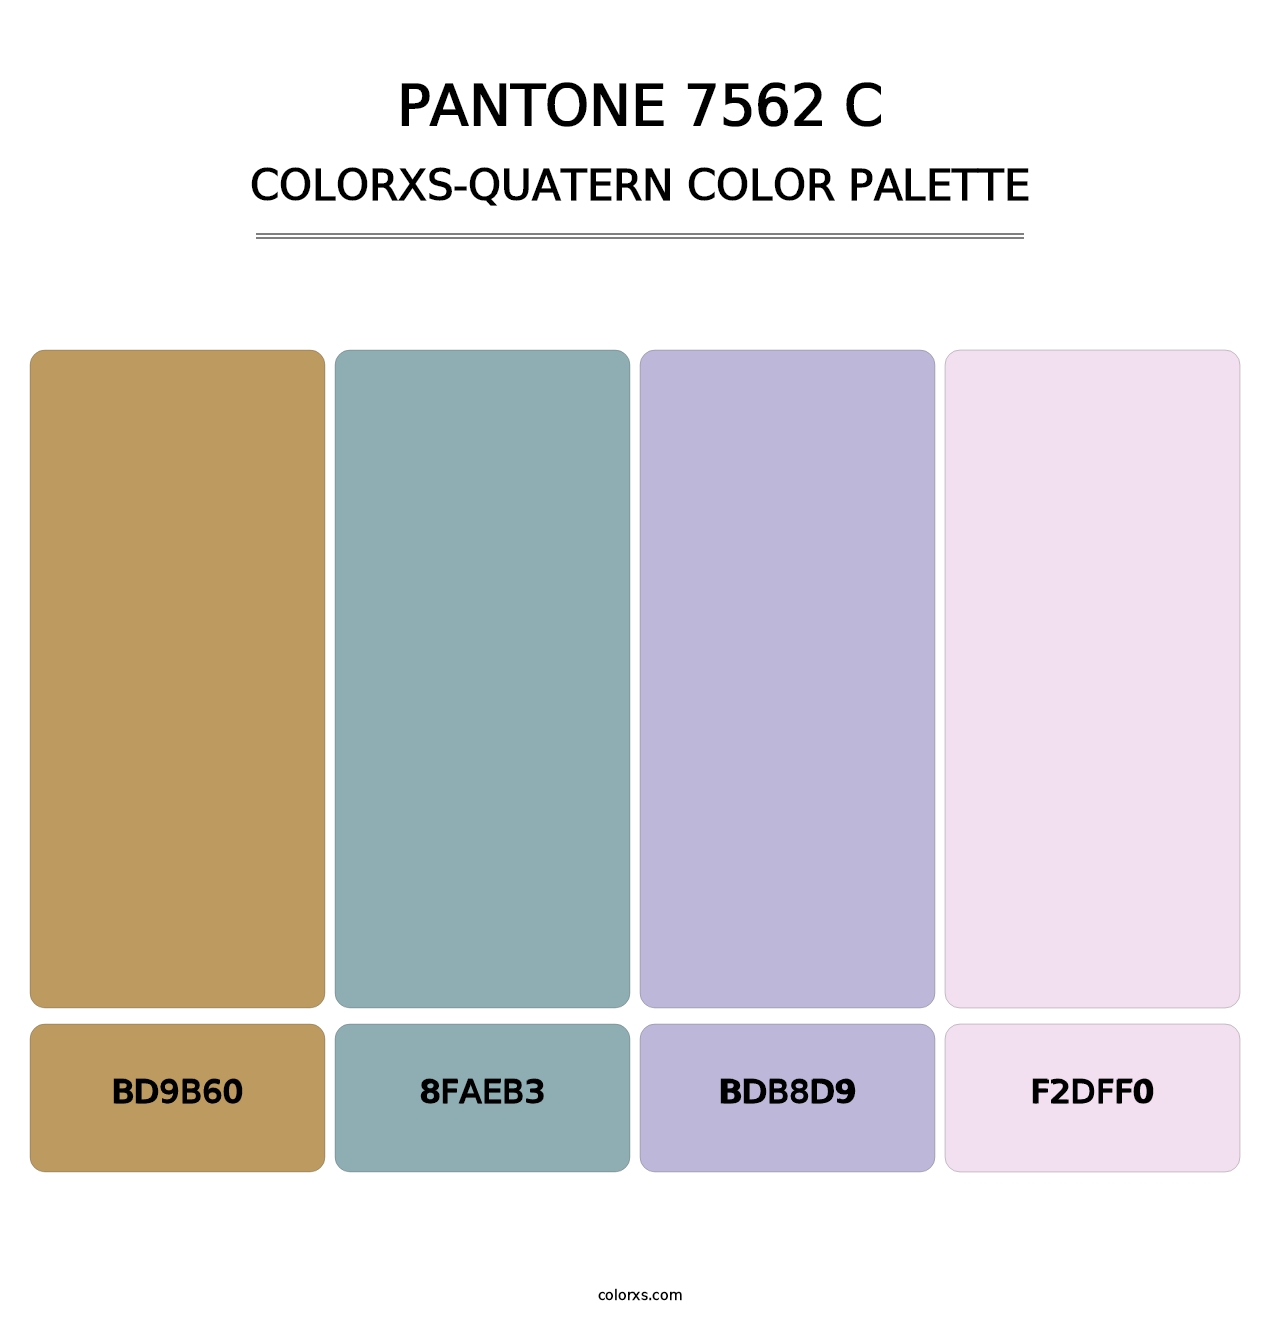 PANTONE 7562 C - Colorxs Quatern Palette